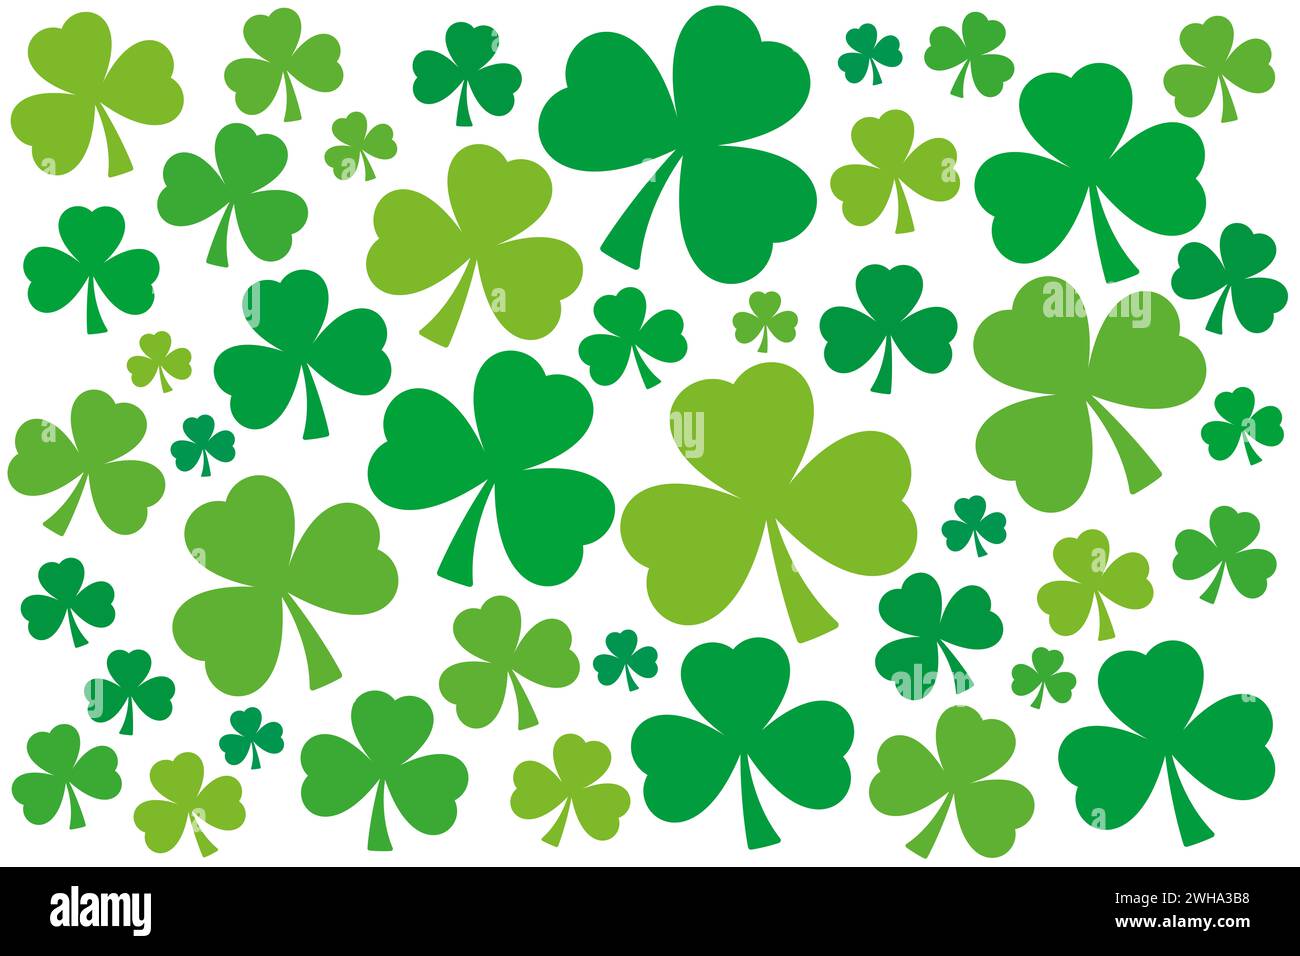 Numerosi shamrock, sfondo verde trifoglio. Profili degli alberi leggermente ritorti, disposti a caso, con diverse tonalità di verde. Simbolo dell'Irlanda. Foto Stock